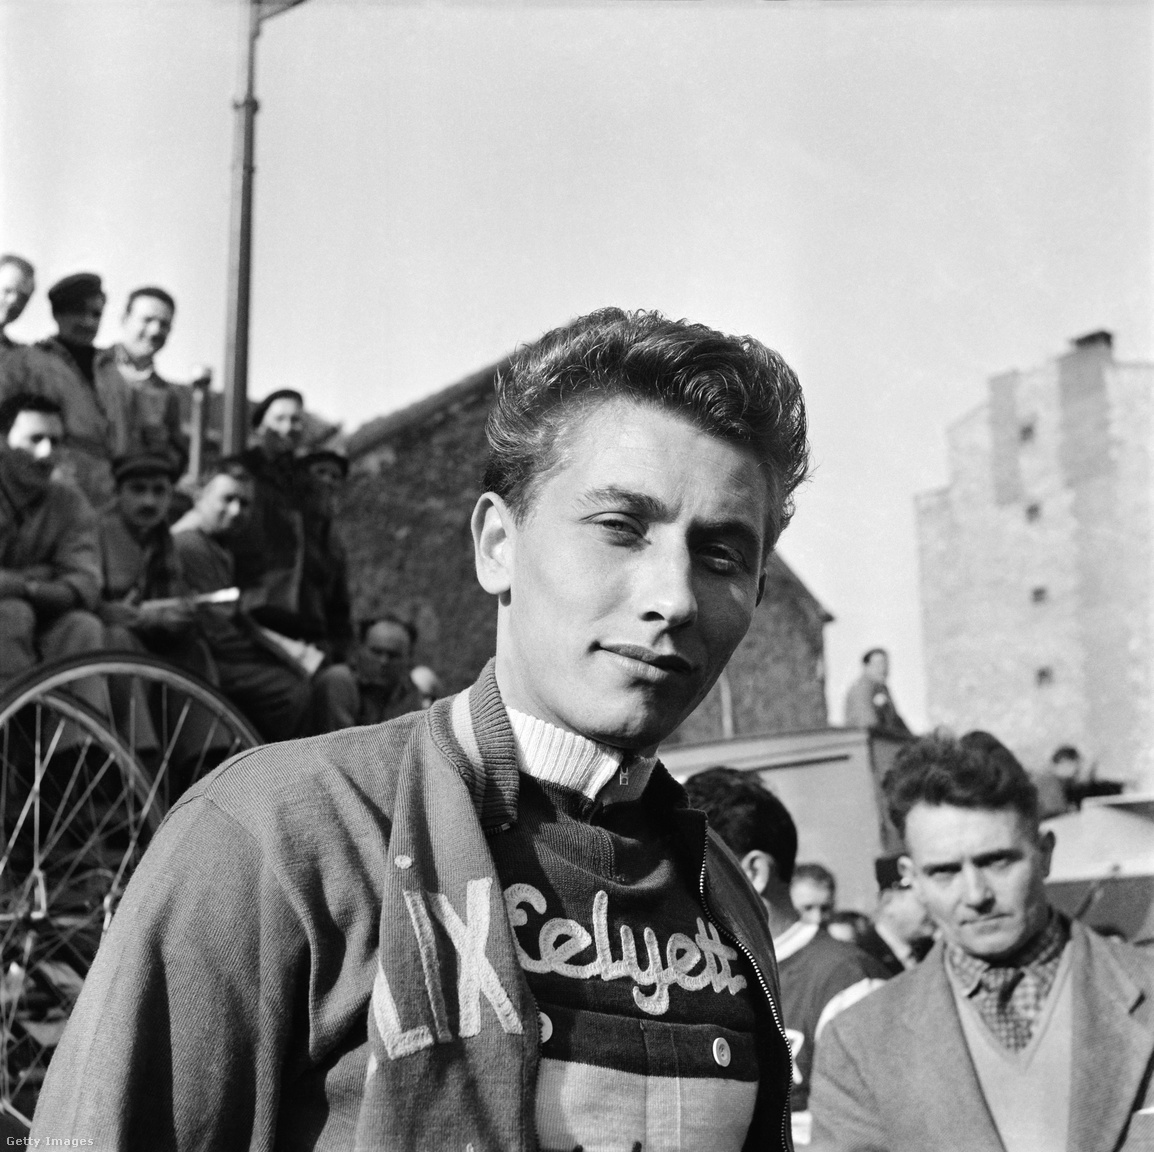 A verseny történetének első ötszörös győztese a francia Jacques Anquetil lett. 1957-ben újoncként került a  csapatba, és mindjárt első kísérletére megnyerte a sárga trikót jó időfutamainak köszönhetően. Anquetil a bulizásban is az élen járt, versenyek közben is eljárt partikra, kártyázni és közben persze ivott is.